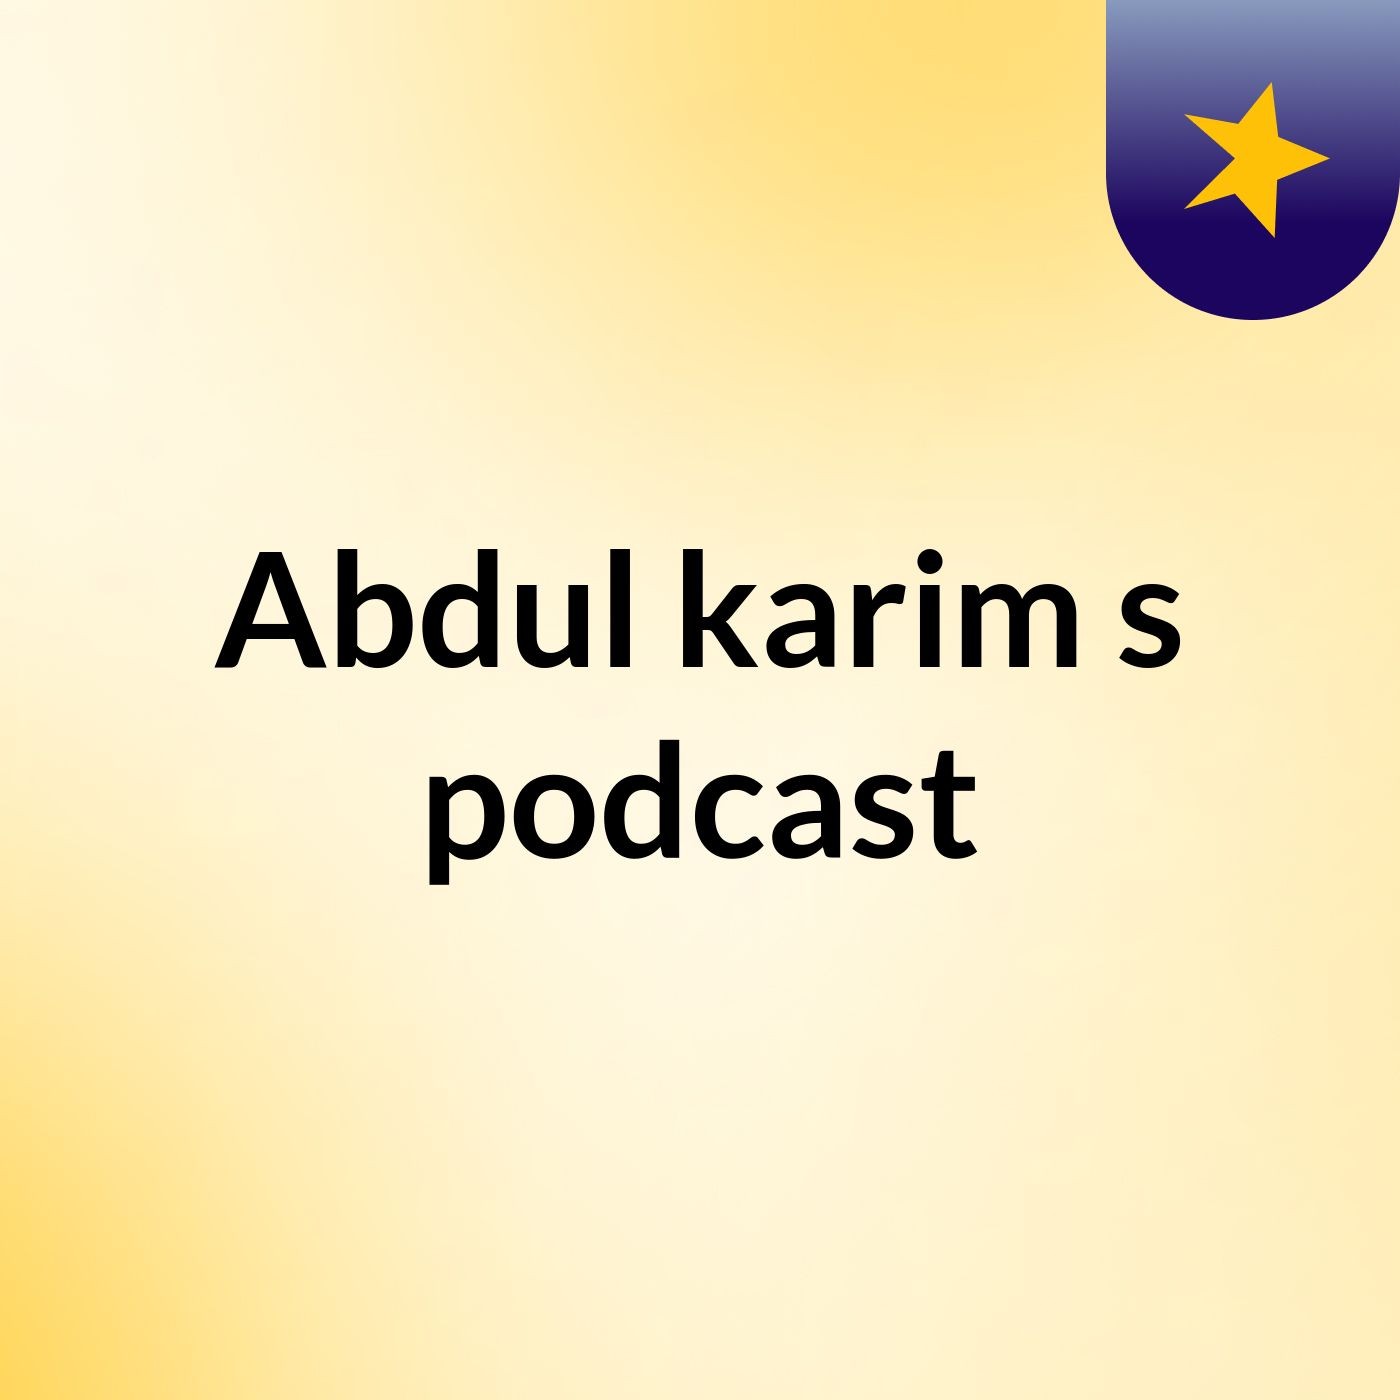 Abdul karim's podcast